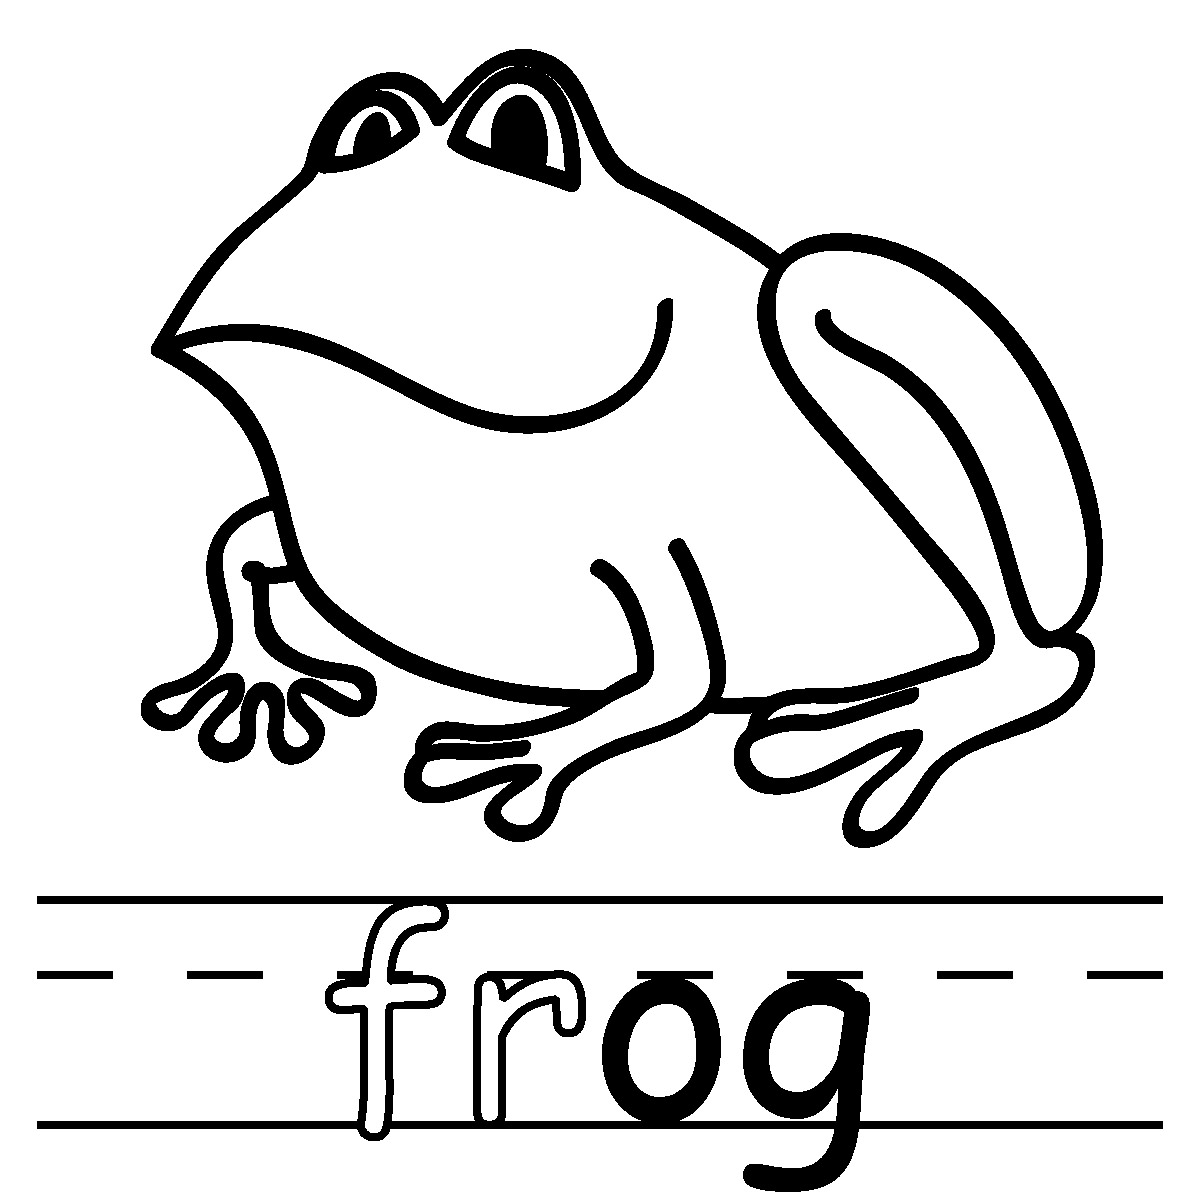 Clip Art: Basic Words: -og Phonics: Frog B&W